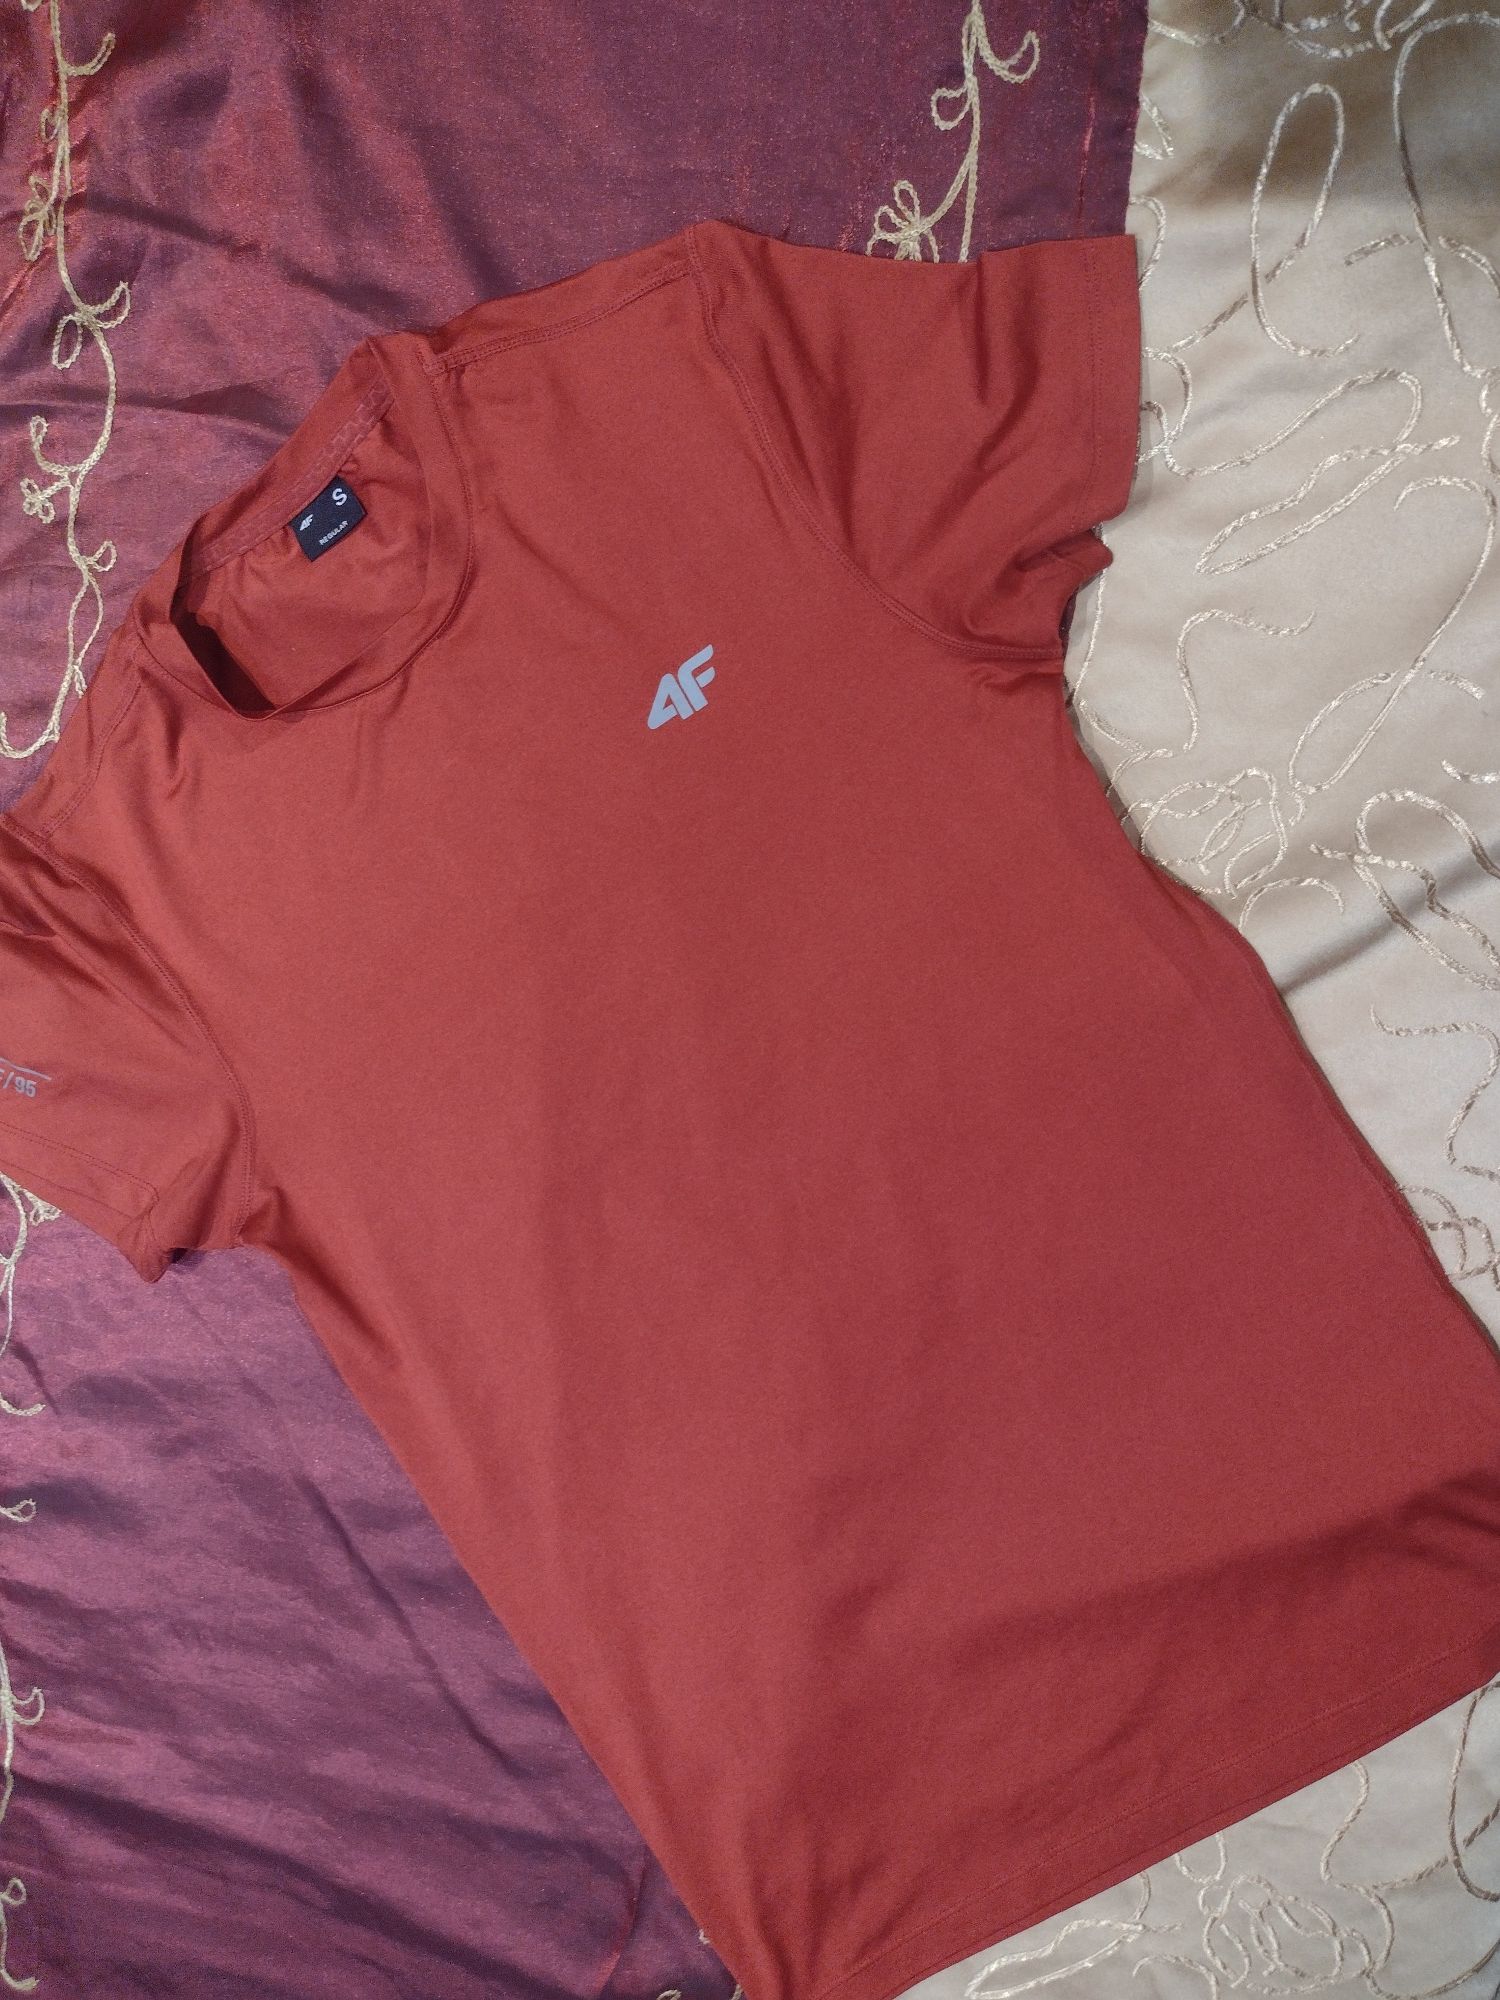 Koszulka t-shirt sportswear 4F oryginalna rozmiar S męska chłopięca